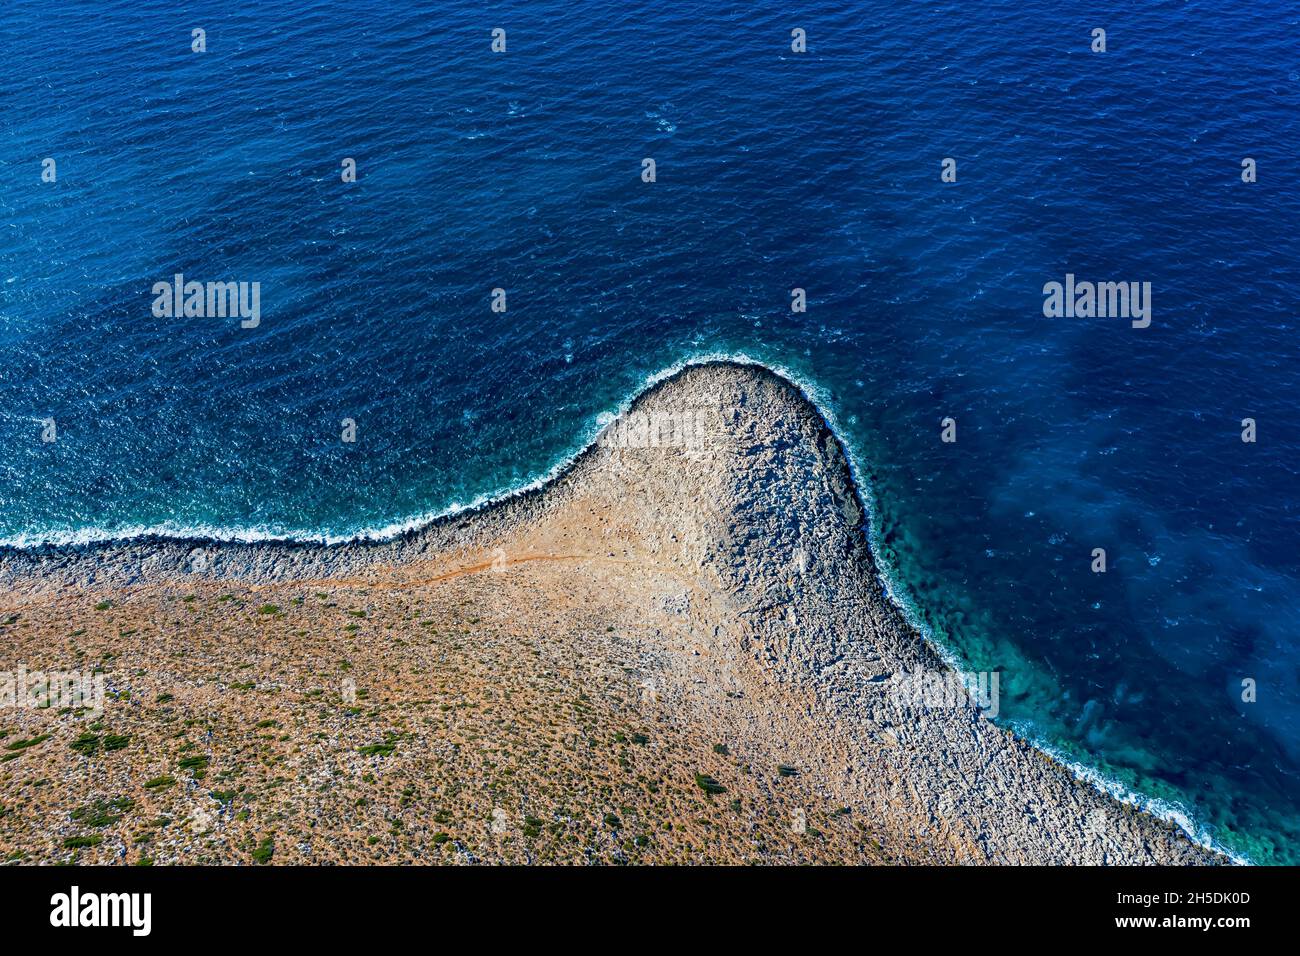 Kreta aus der Luft | Schöne Landschaften auf Kreta von oben gefilmt | Creta dall'alto con drone Foto Stock